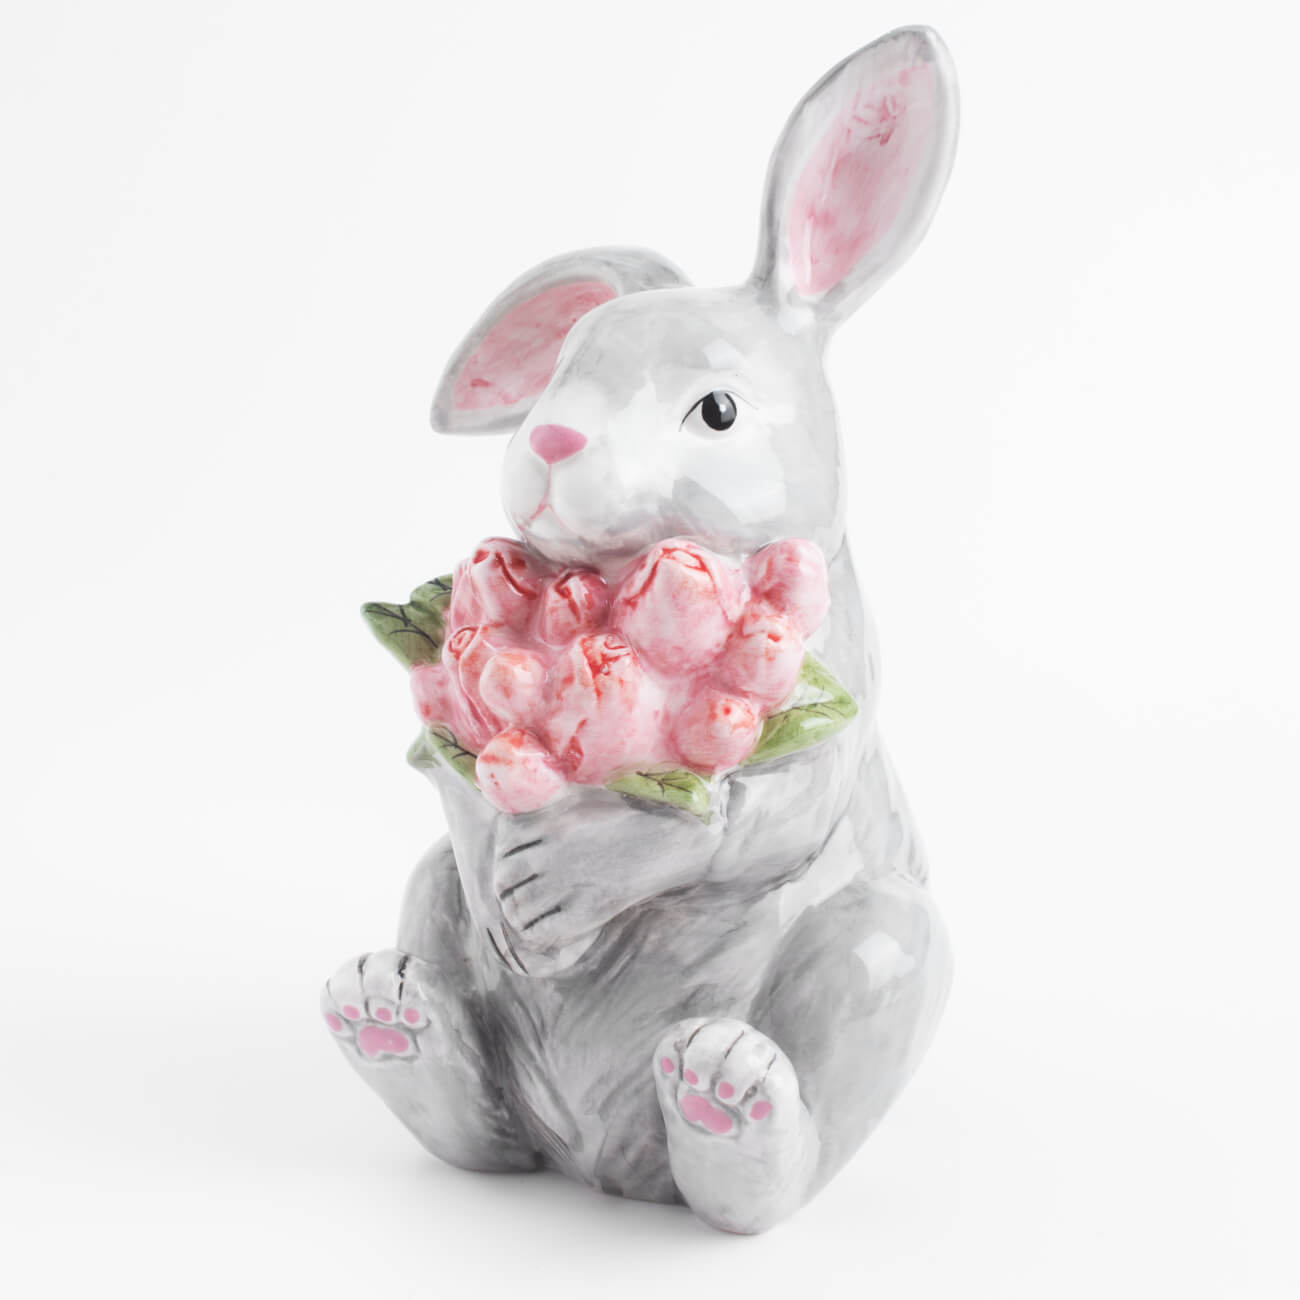 Статуэтка, 23 см, керамика, серая, Кролик с тюльпанами, Pure Easter статуэтка 15 см фарфор porcelain белая кролик в ах pure easter